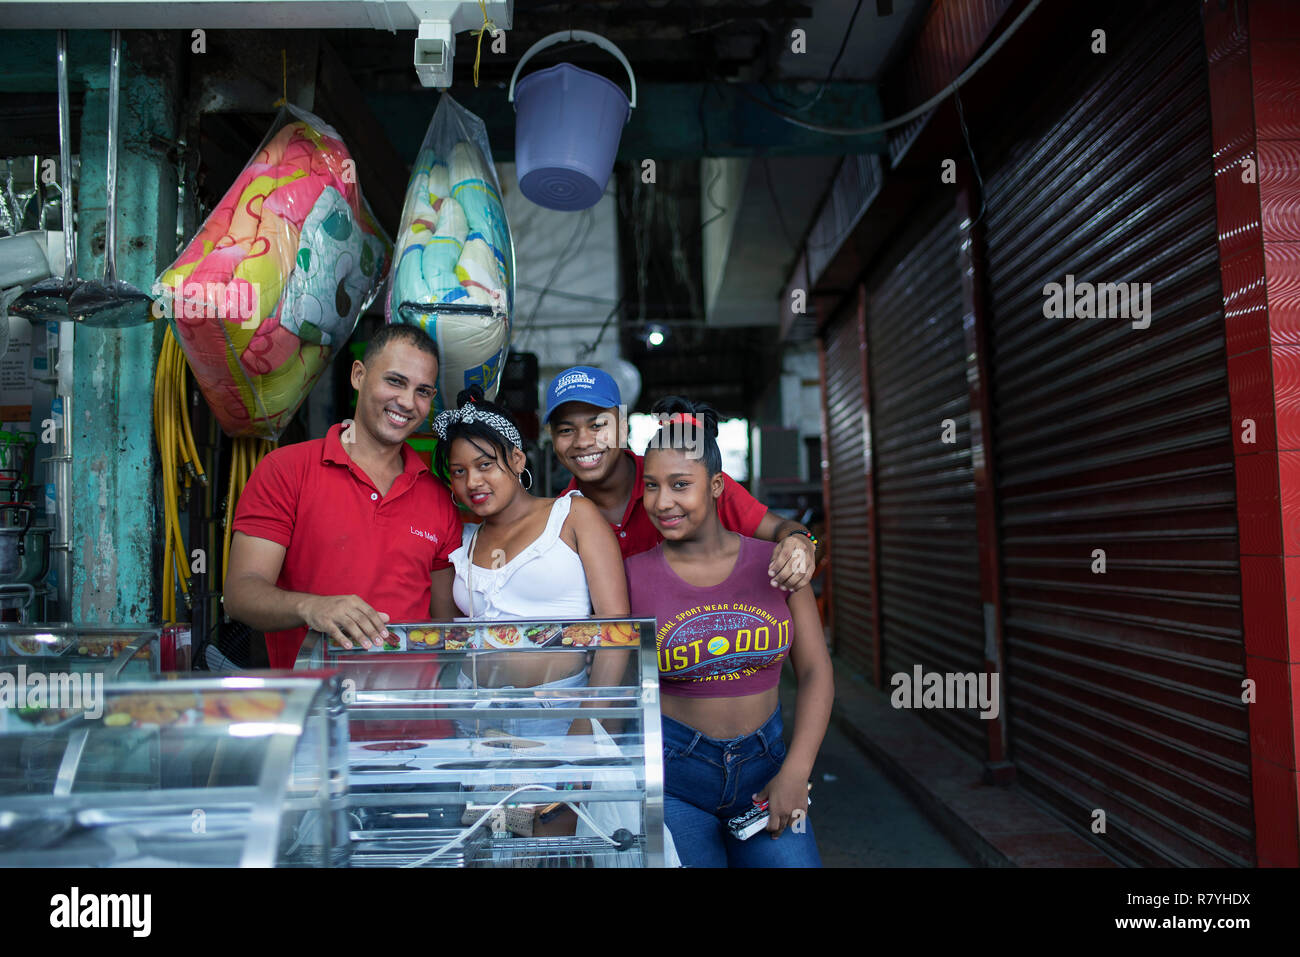 Gruppenfoto der lächelnden, junge kolumbianische Volk an Bazurto Markt (Mercado Bazurto) außerhalb einer haushaltswaren Shop. Cartagena de Indias, Kolumbien. Okt 2018 Stockfoto